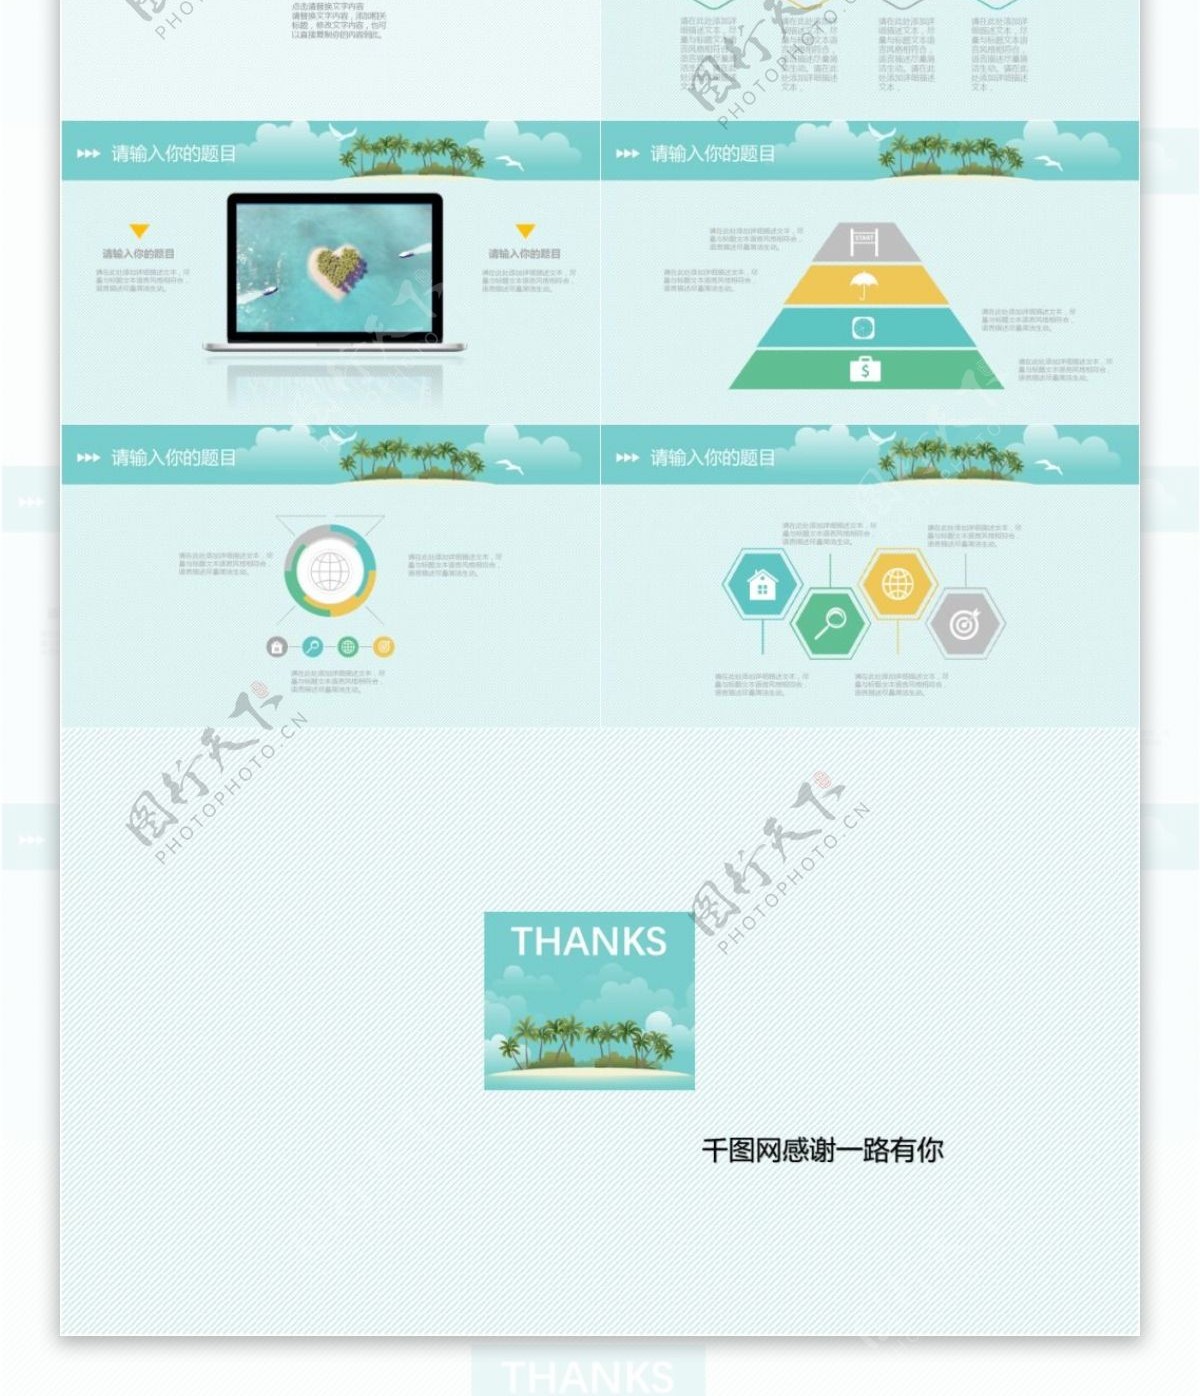 夏日海岛游项目策划宣传动态产品介绍PPT模板免费下载